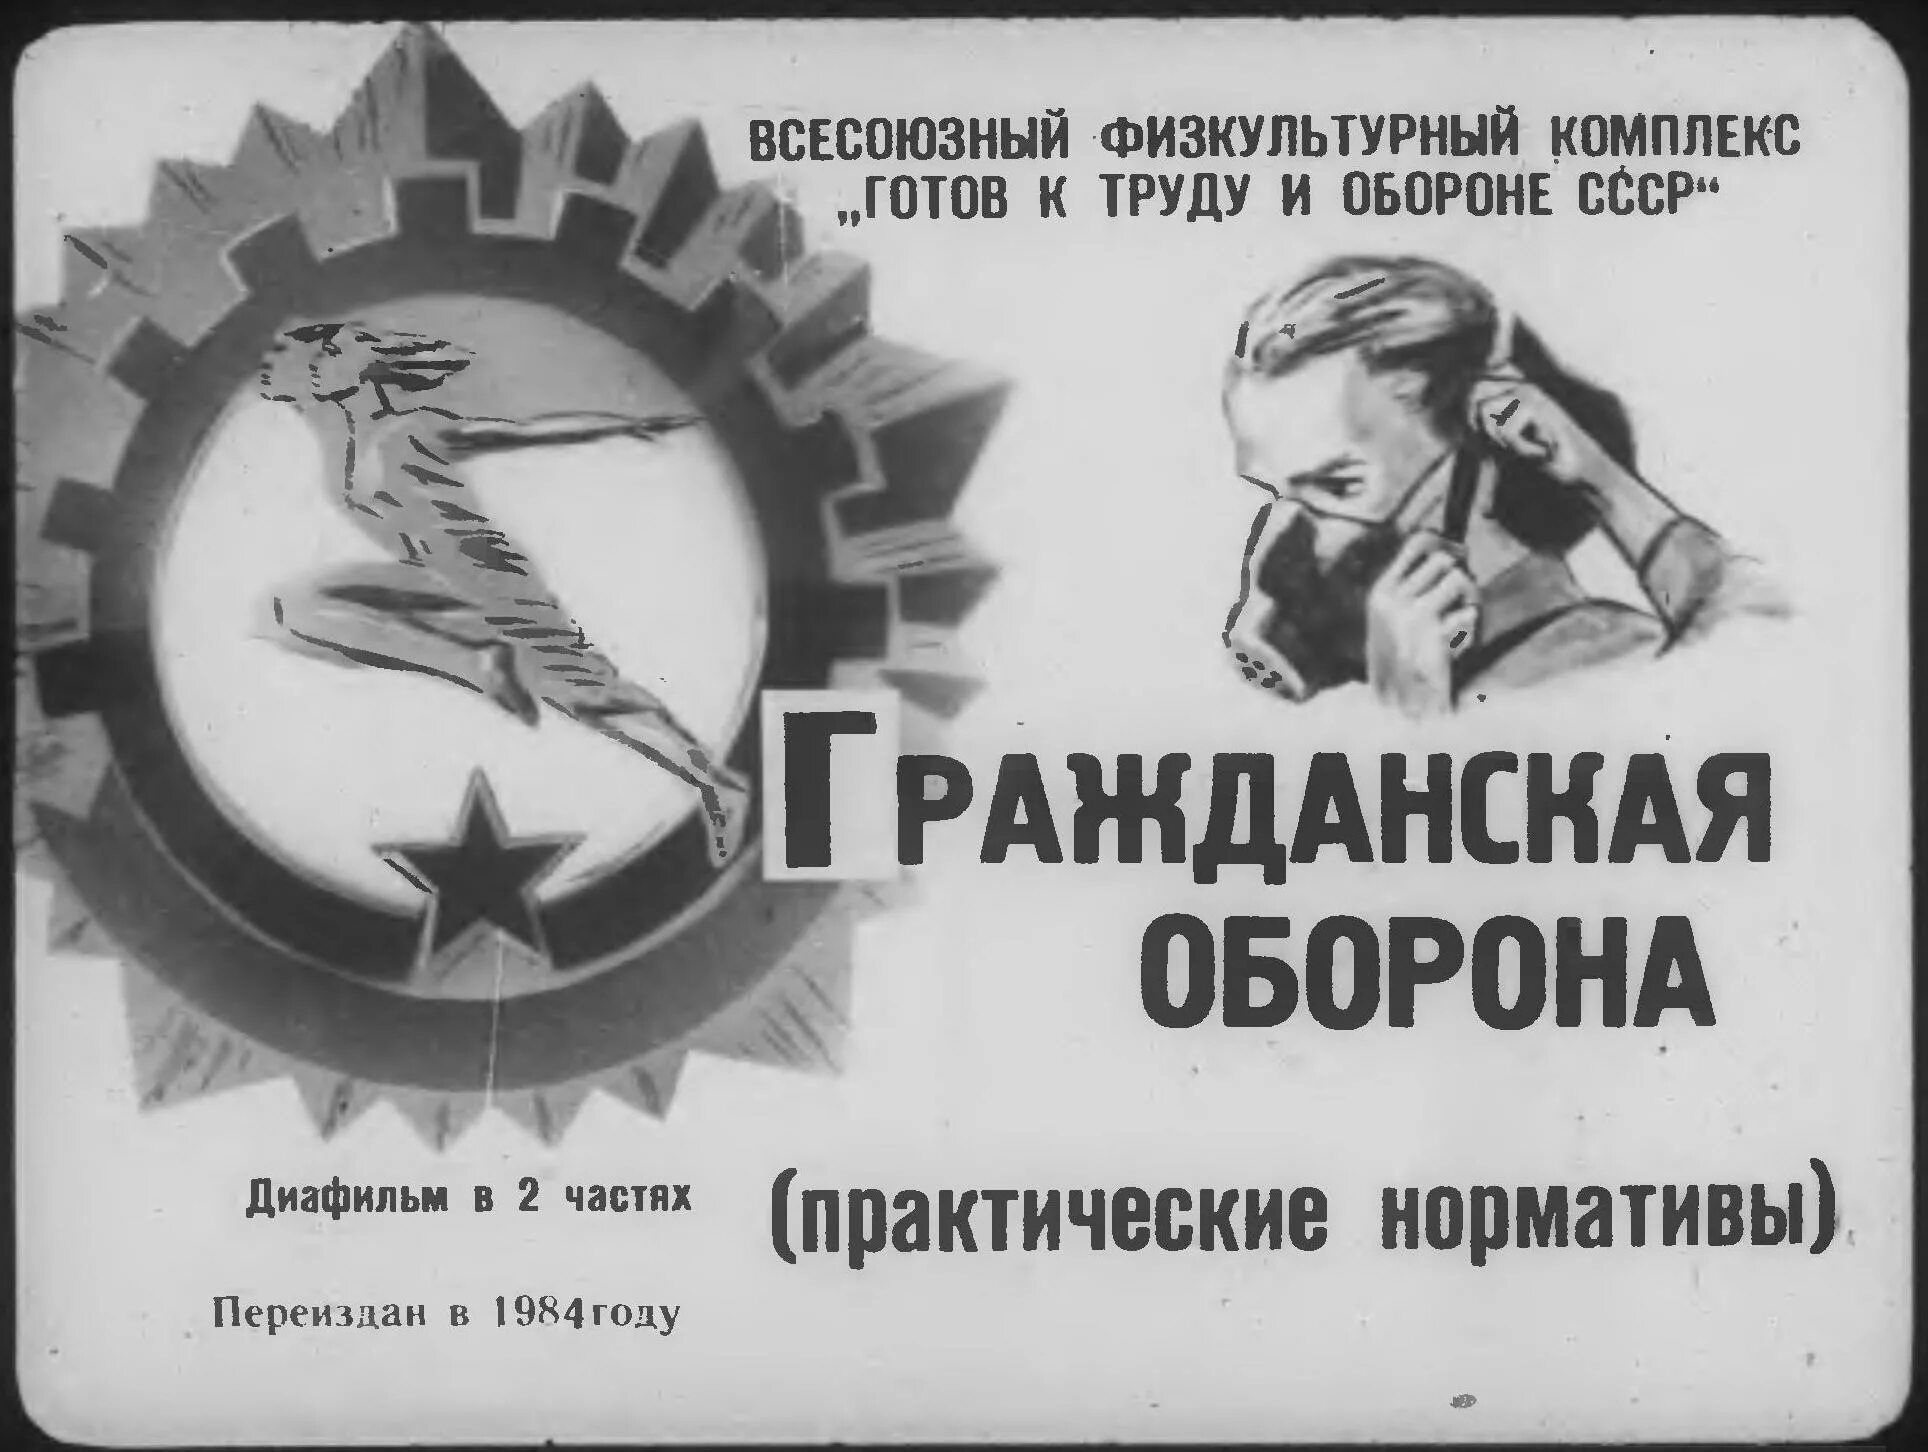 Читать го. Гражданская оборона. День гражданской обороны СССР. Плакат МПВО. Советские лозунги Гражданская оборона.